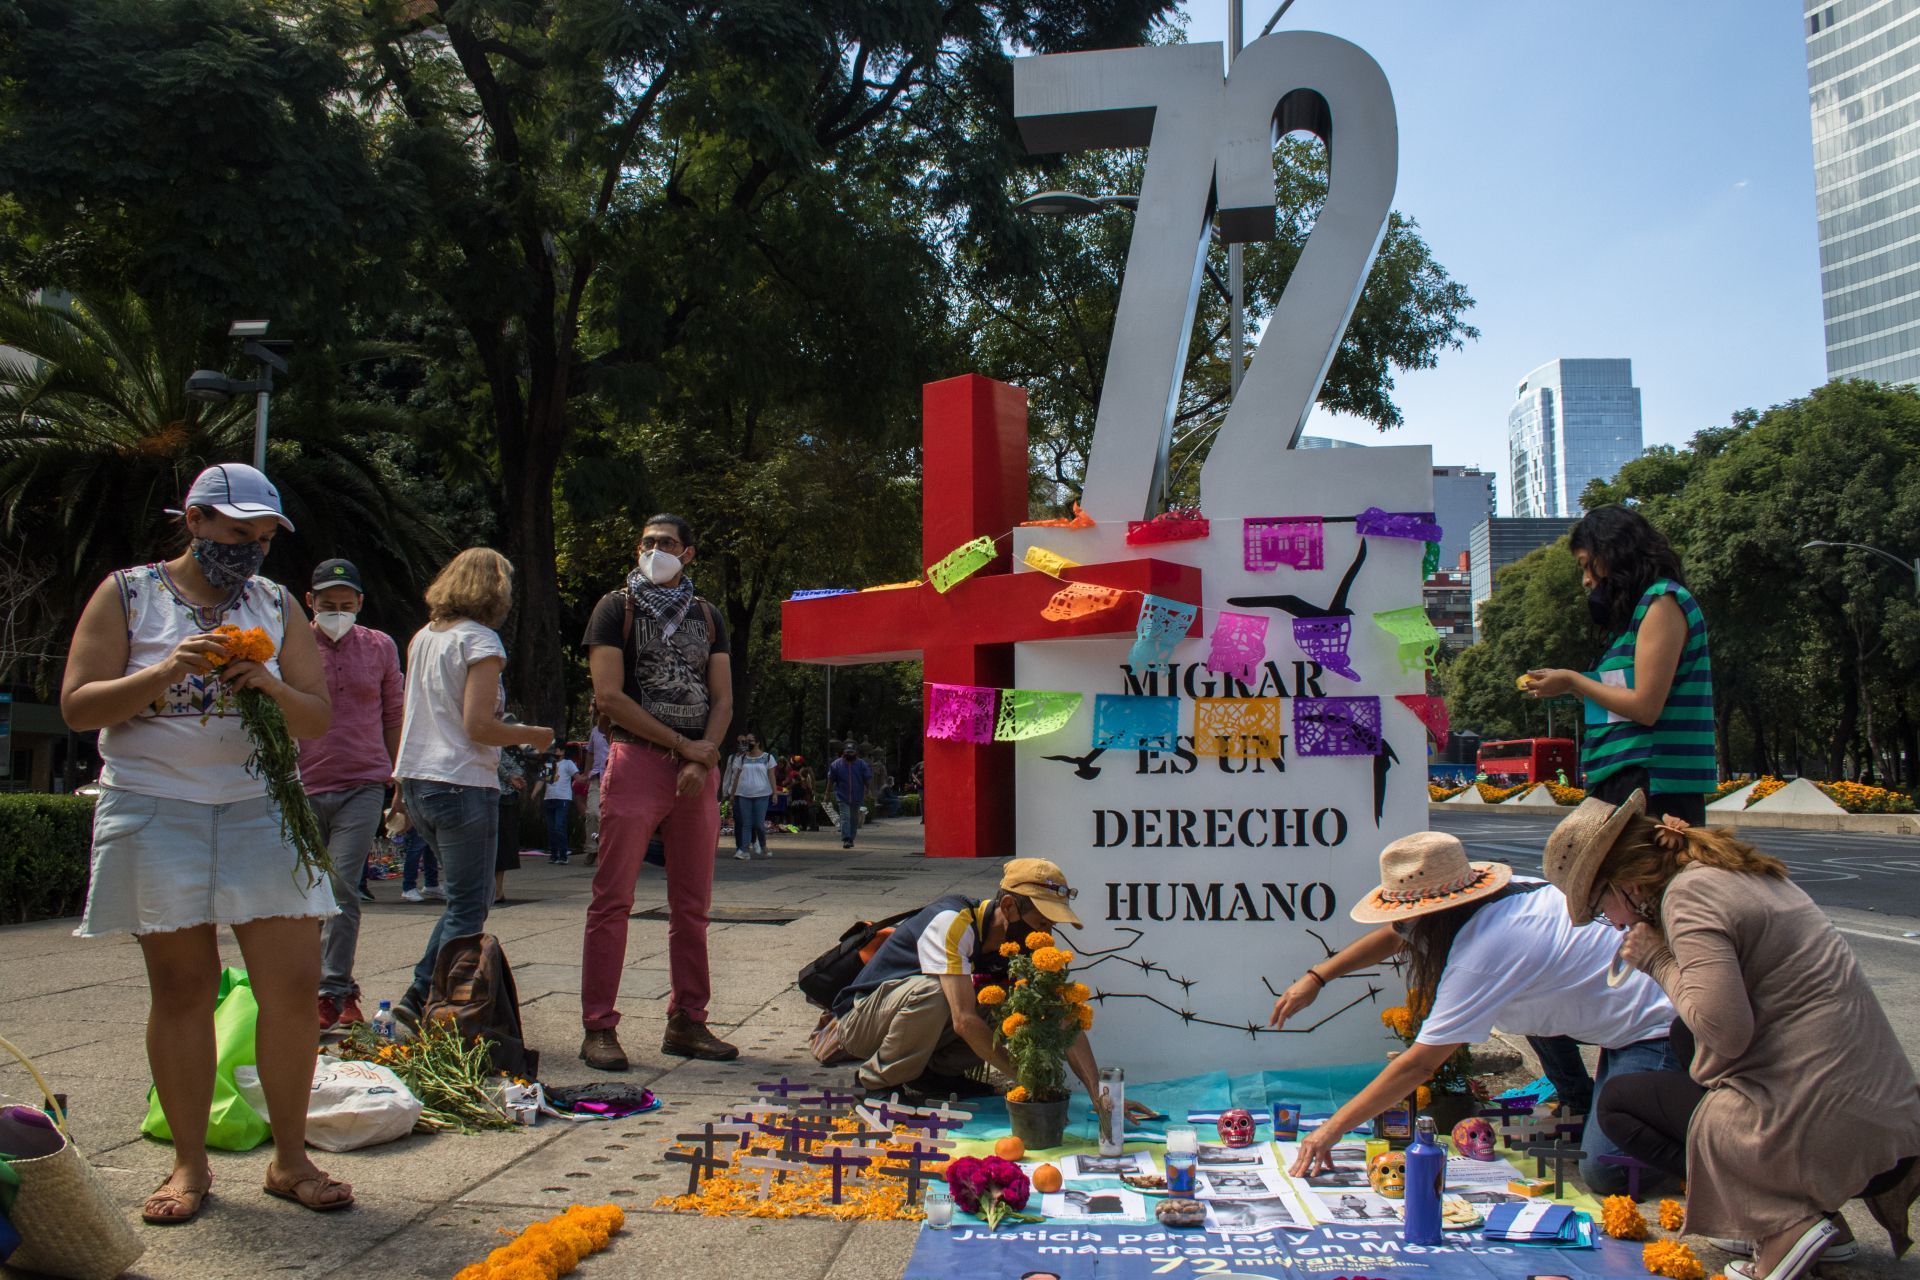 CIUDAD DE MÉXICO, 01NOVIEMBRE2020.- Ciudadanos montaron una ofrenda de Día de Muertos en el Antimonumento a los 72, el cual esta dedicado a los 72 migrantes que murieron en San Fernando en Tamaulipas, mismo que se ubica en avenida Reforma, frente a la embajada de Estados Unidos. Los ahí presentes pusieron retratos de los que ahí perecieron y exigieron justicia a sus verdugos, ya que acusan que el gobierno federal nunca esclareció los hechos. 
FOTO: MOISÉS PABLO/CUARTOSCURO.COM